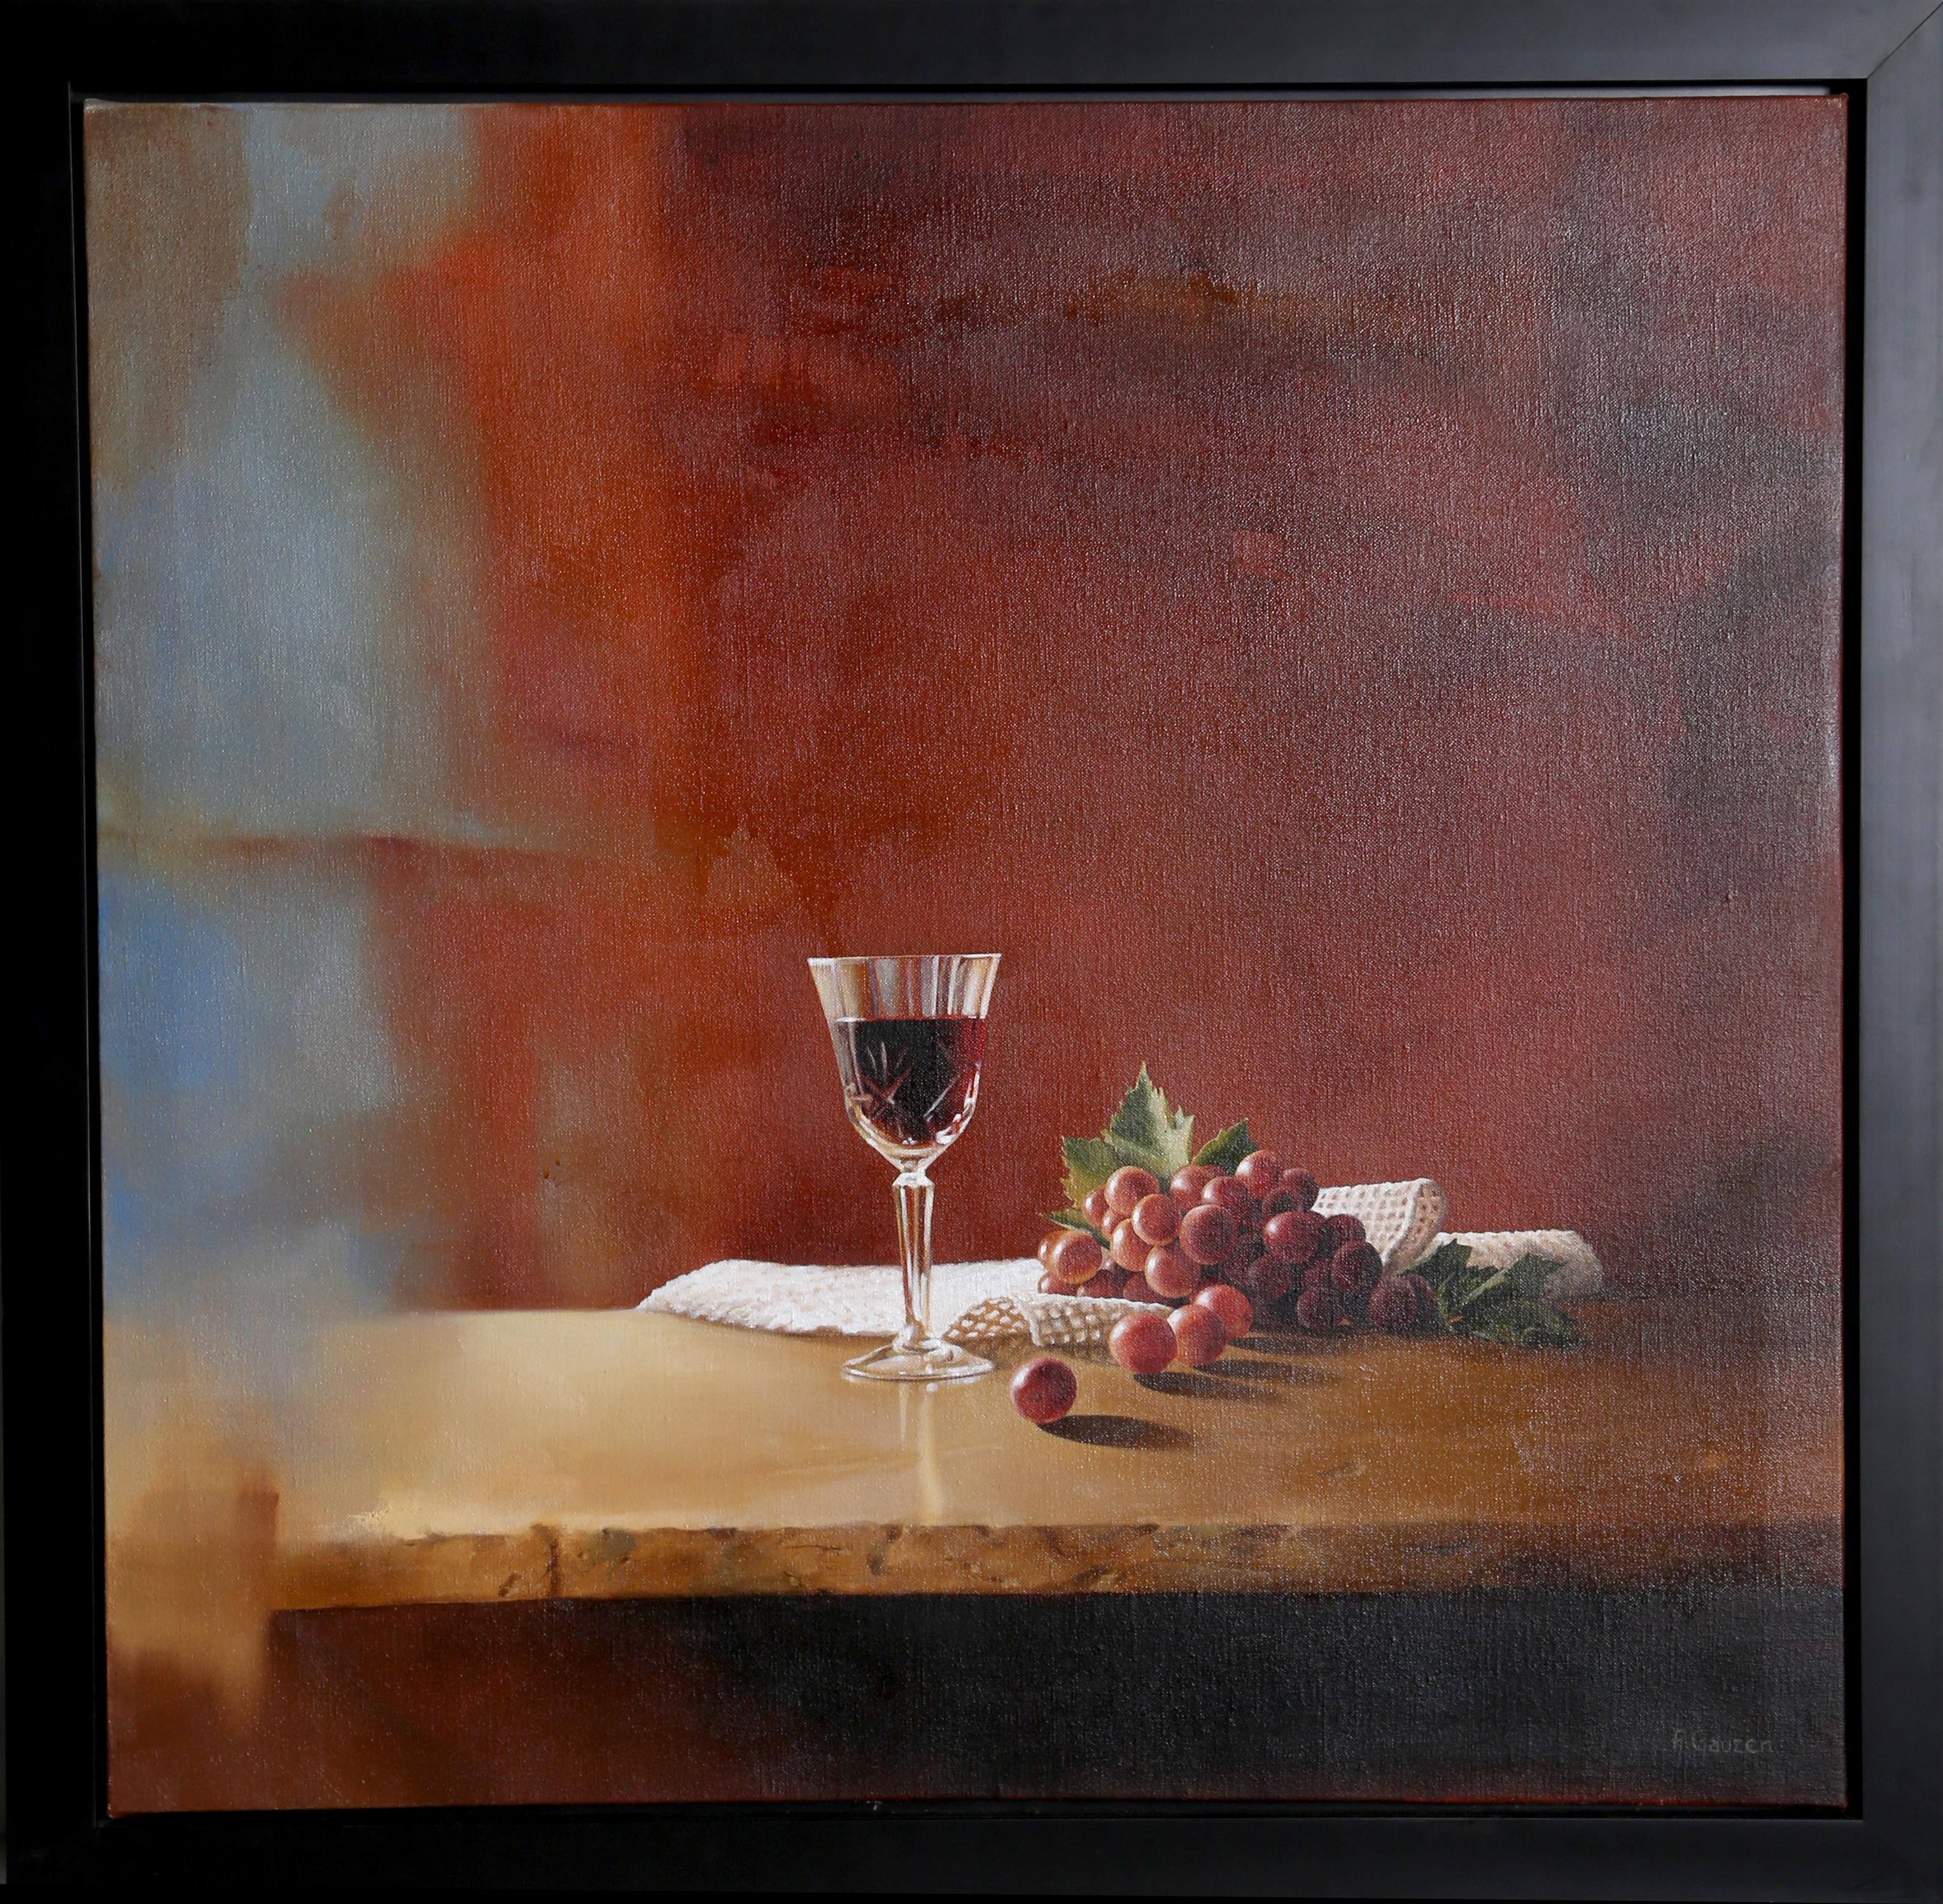 Künstlerin: Alejandra Gauzen, Chilenin (1967 - )
Titel: Stilleben mit Weinglas
Jahr: ca. 2000
Medium: Öl auf Leinwand, signiert v.l.n.r.
Größe: 30,5 x 31 Zoll (77,47 x 78,74 cm)